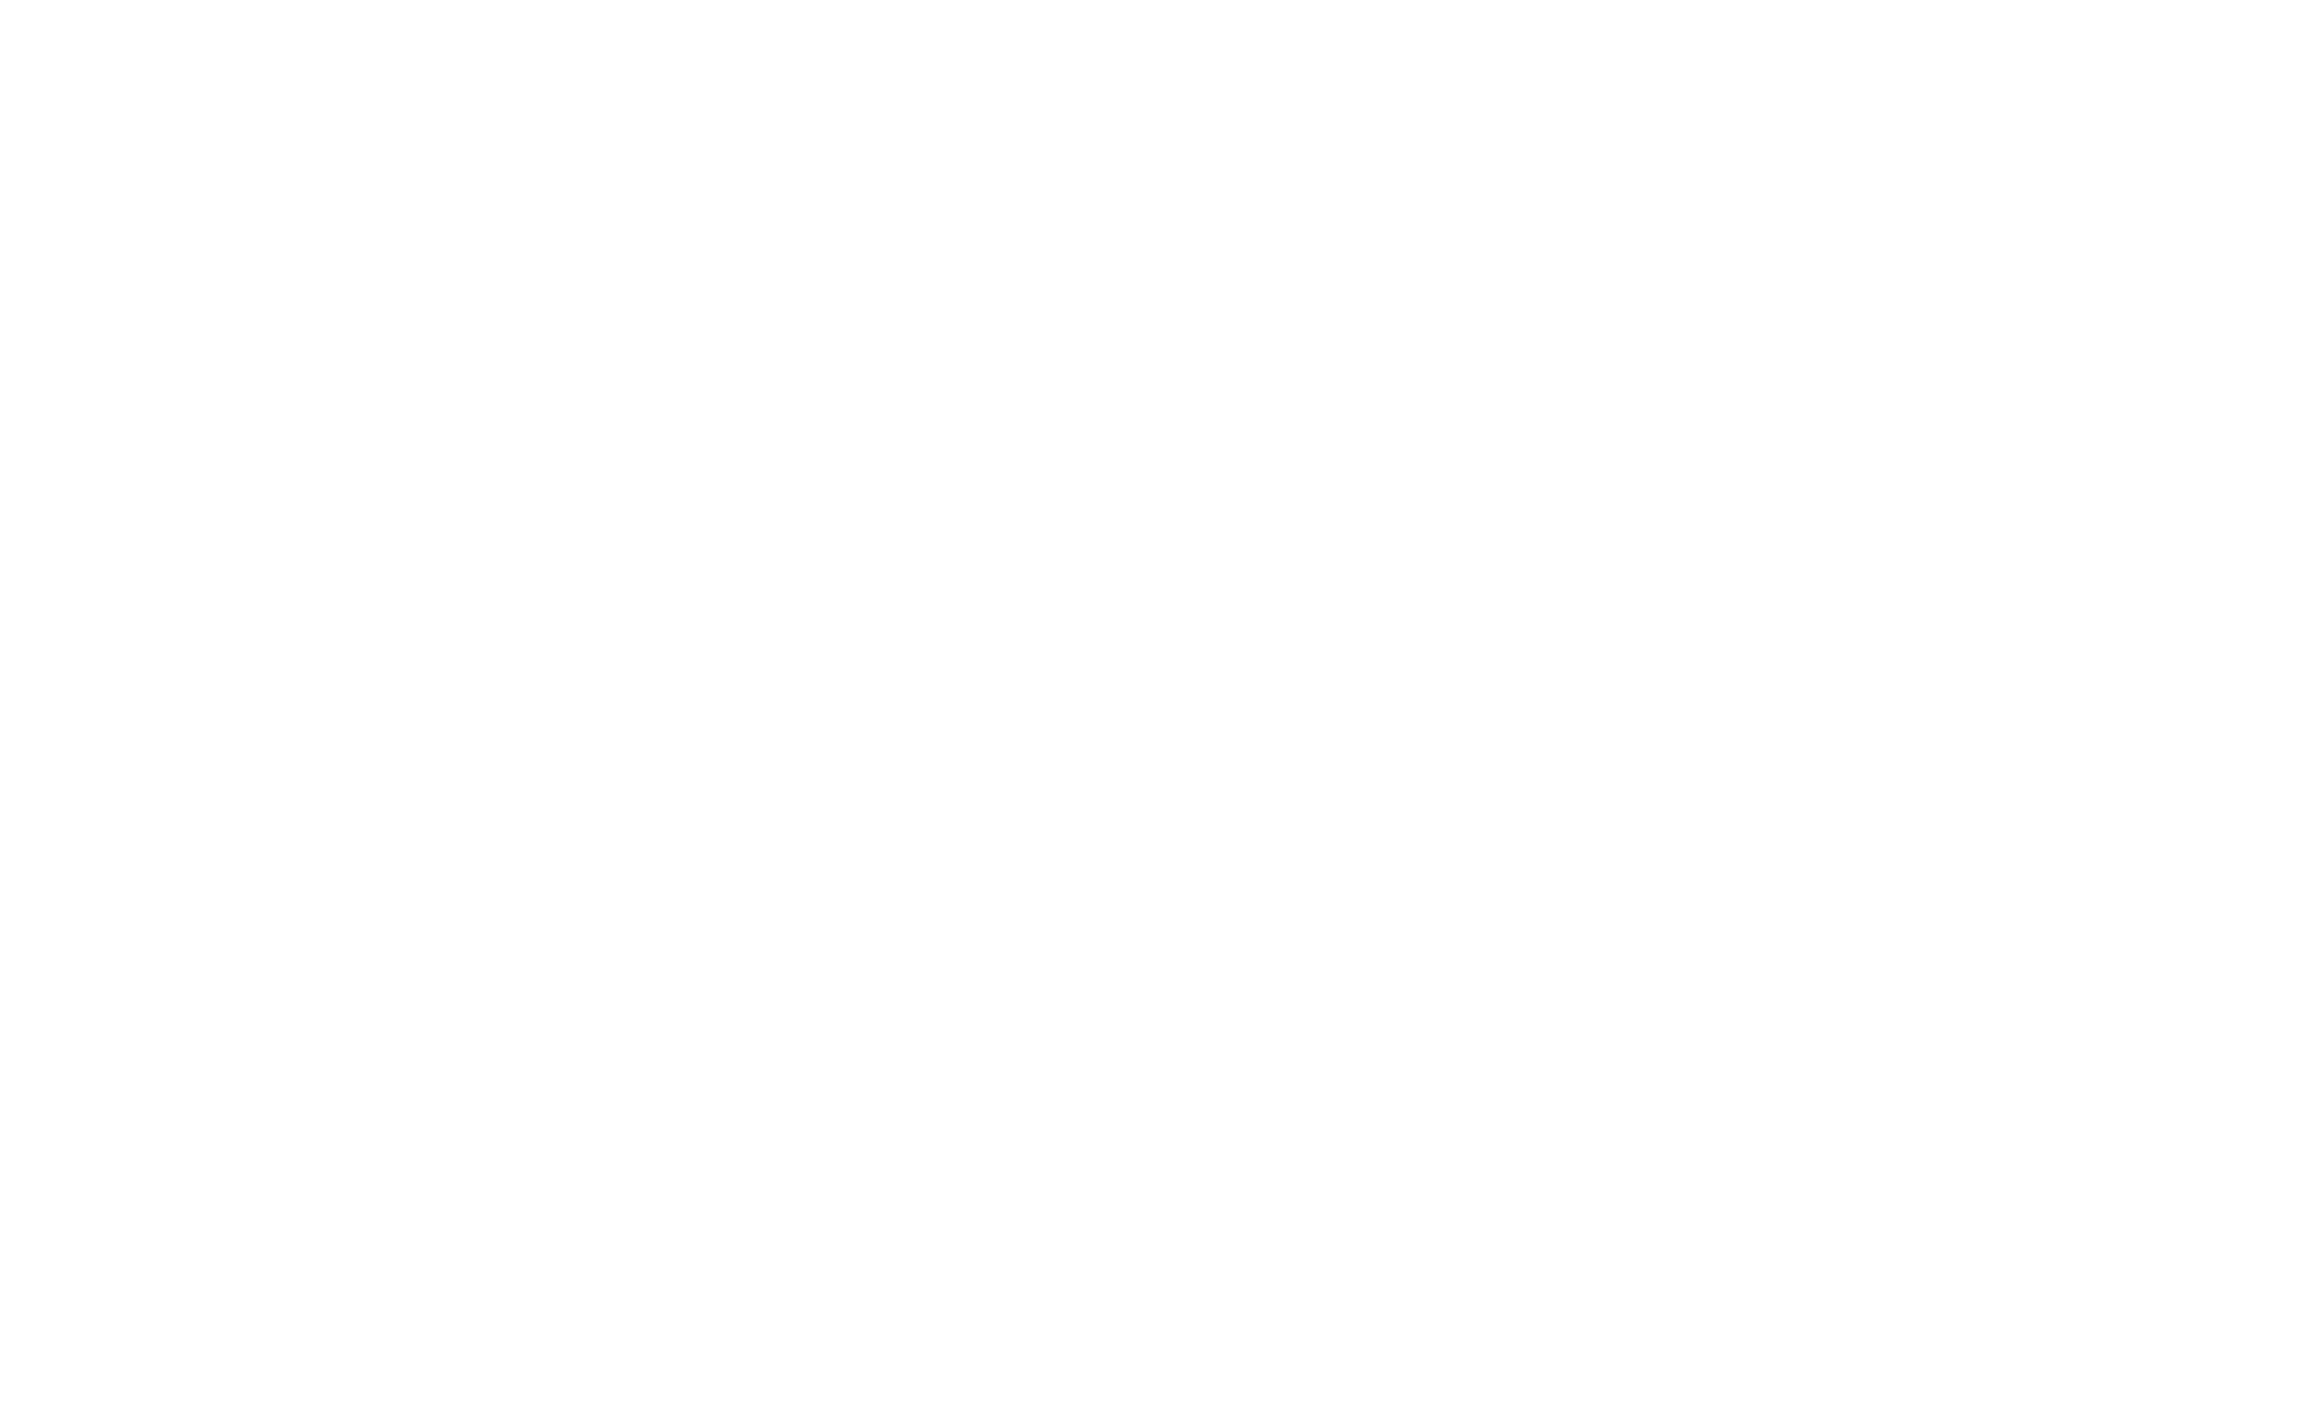 Castle Point Logo